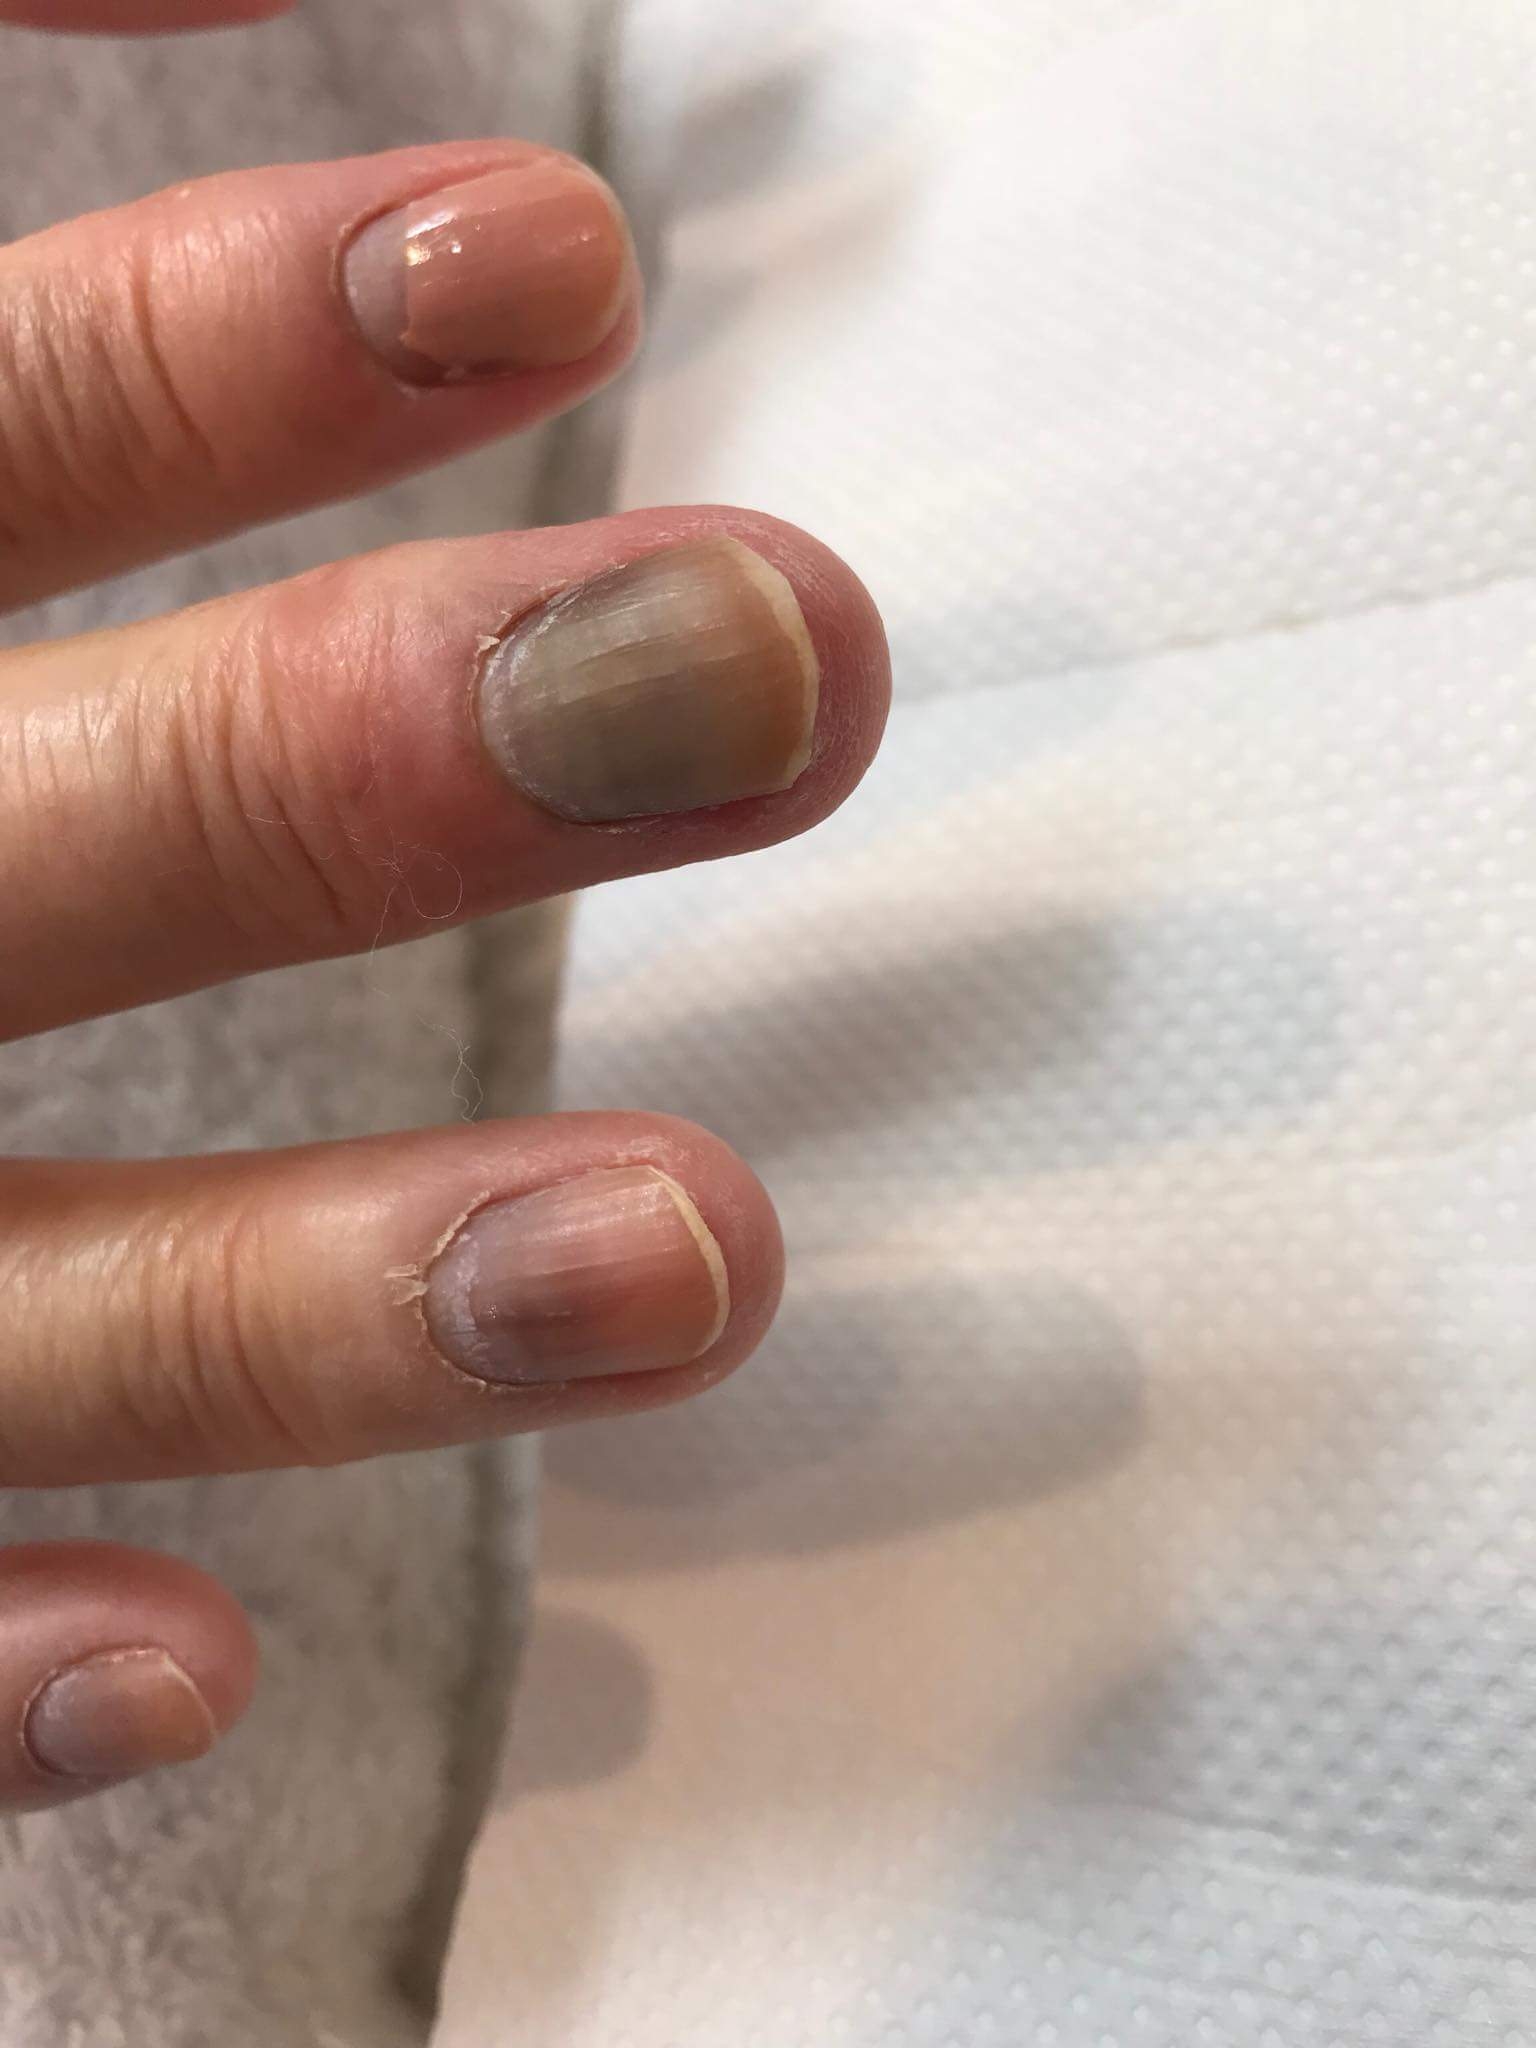 抗がん剤の副作用 爪への影響について Npo法人 全国福祉理美容師養成協会